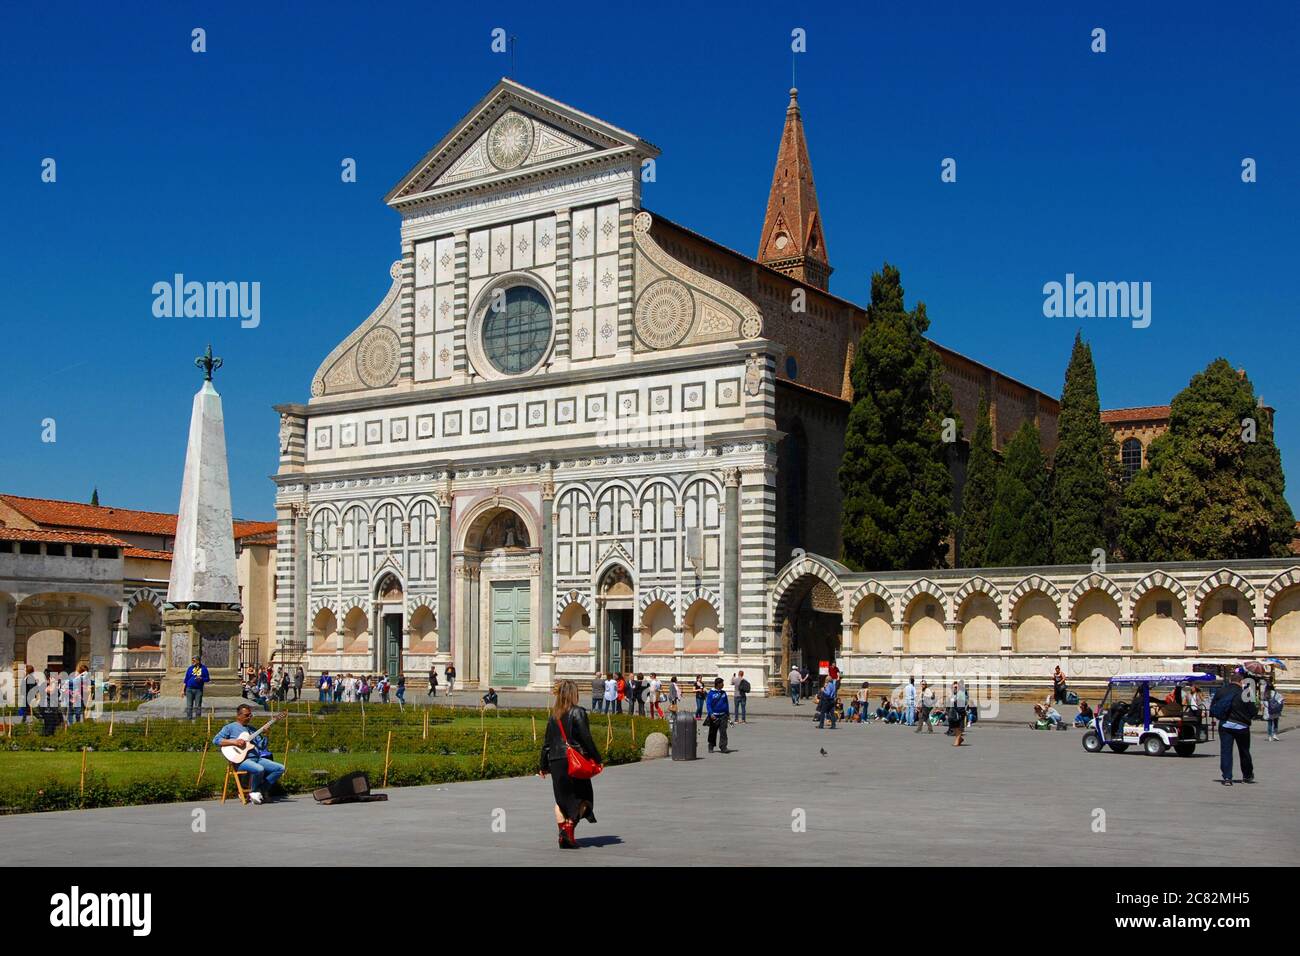 Les touristes visitent la belle église gothique et Renaissance de Santa Maria Novella, dans le centre historique de Florence Banque D'Images